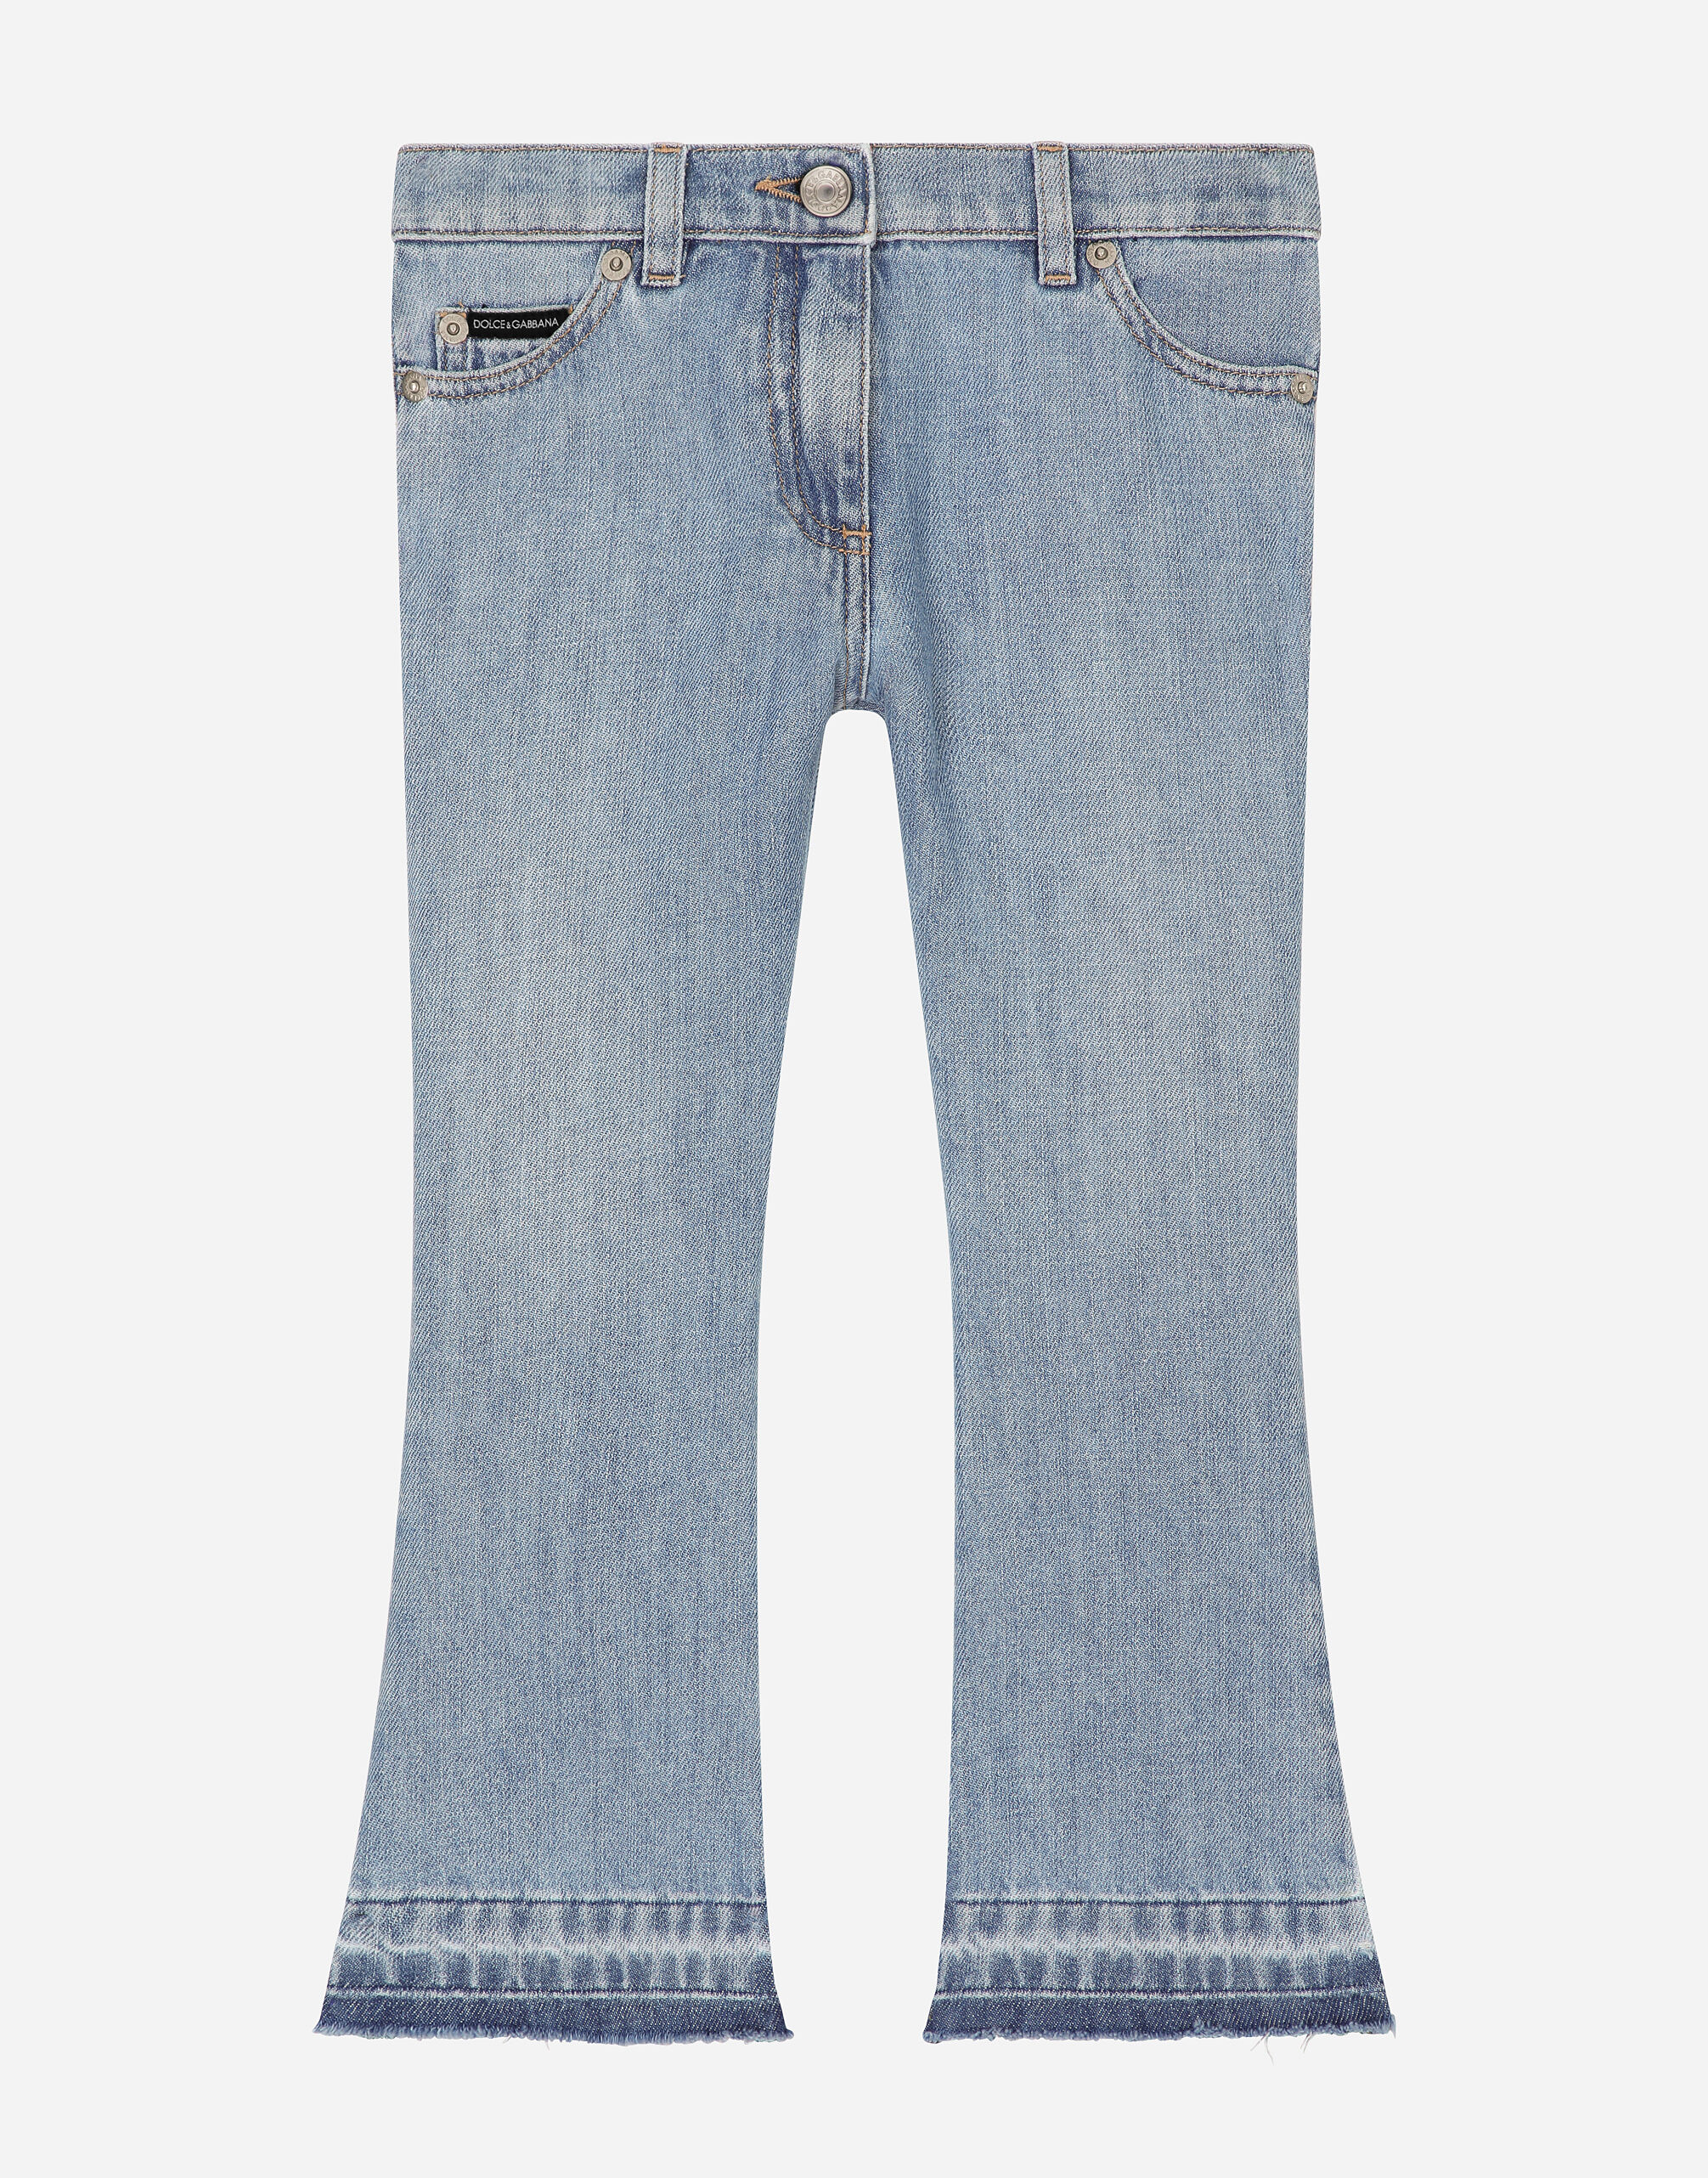 Dolce & Gabbana Jeans 5 tasche in denim con placca logata Stampa LB4H48G7E1J